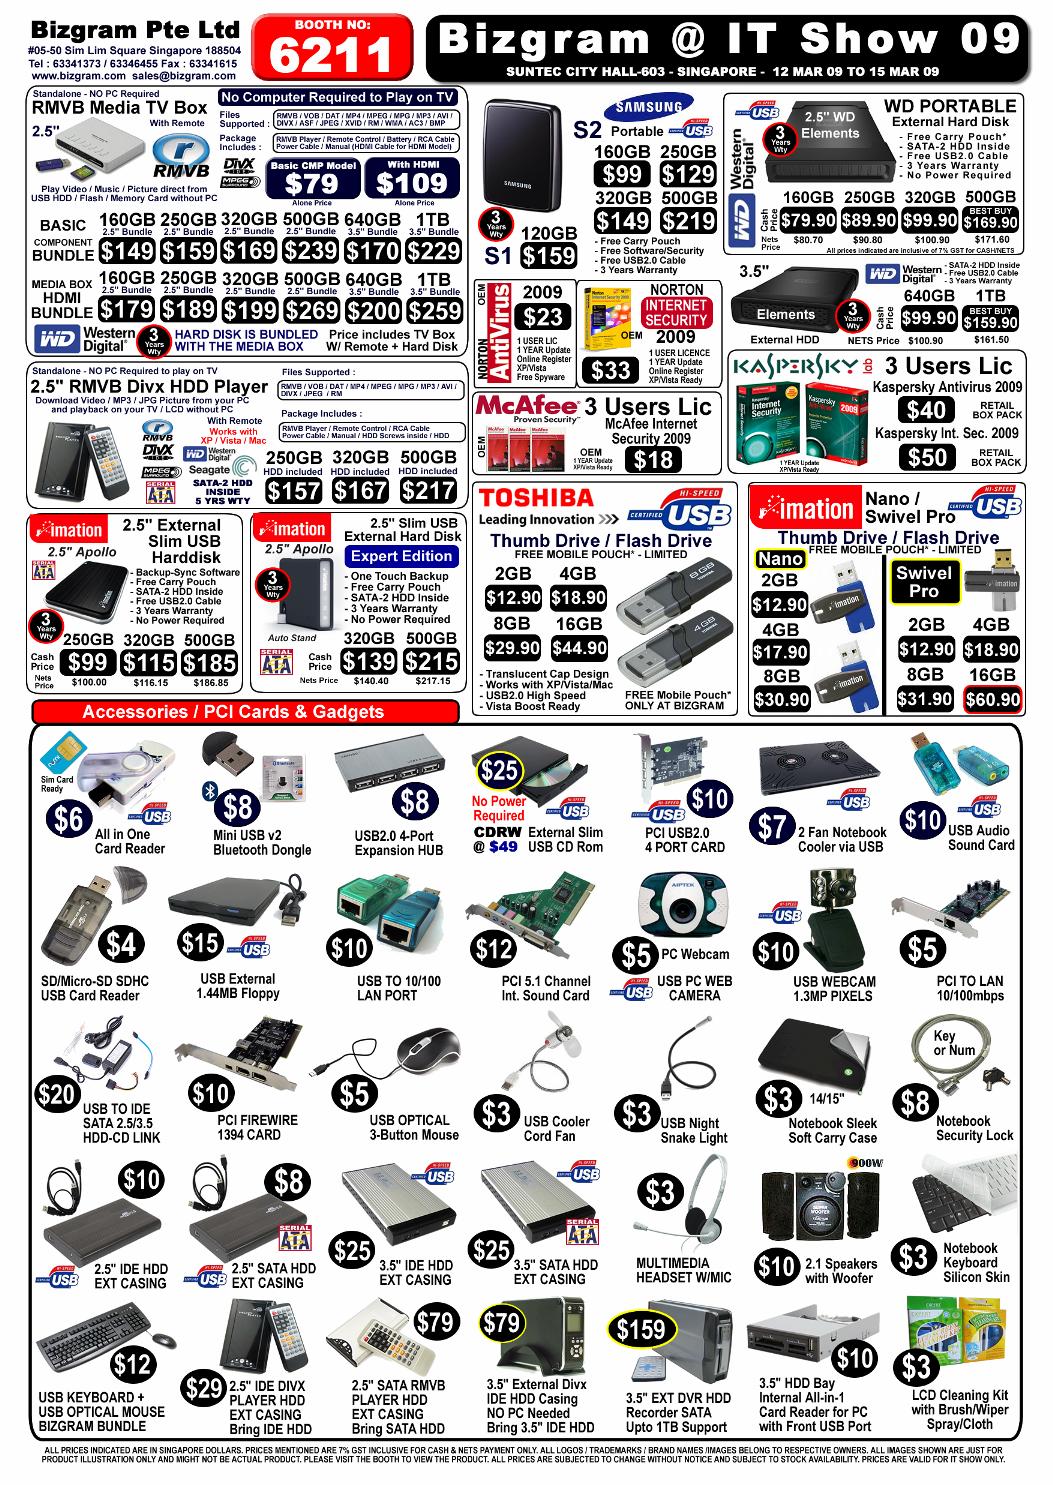 IT Show 2009 price list image brochure of Bizgram Front